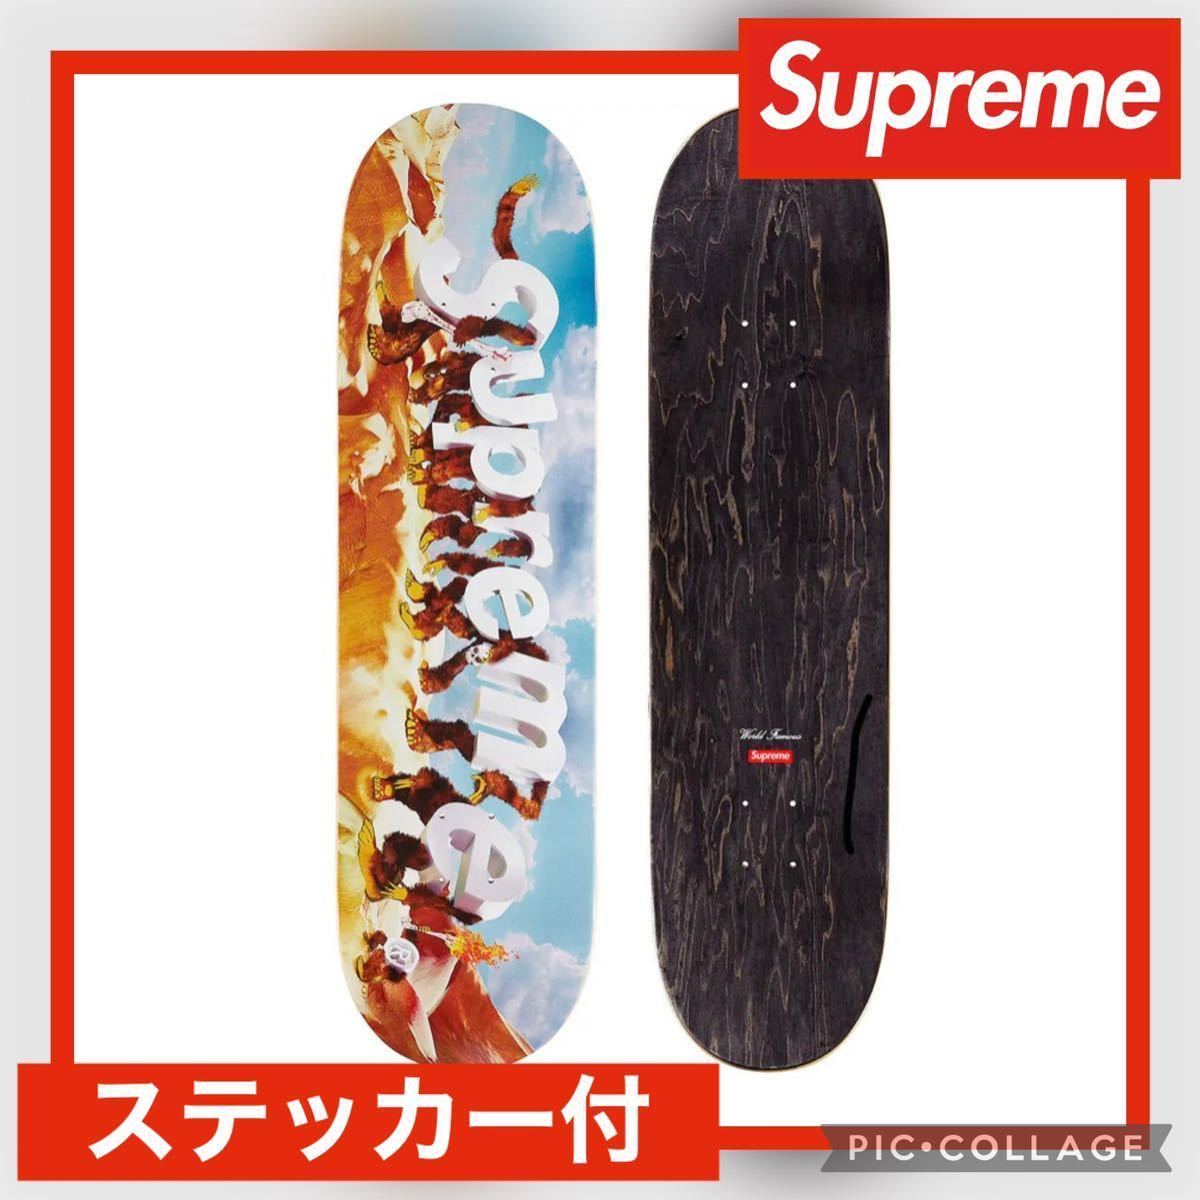 日/祝も発送 最終値下げ!!supreme・apeスケボーデッキ - スケートボード